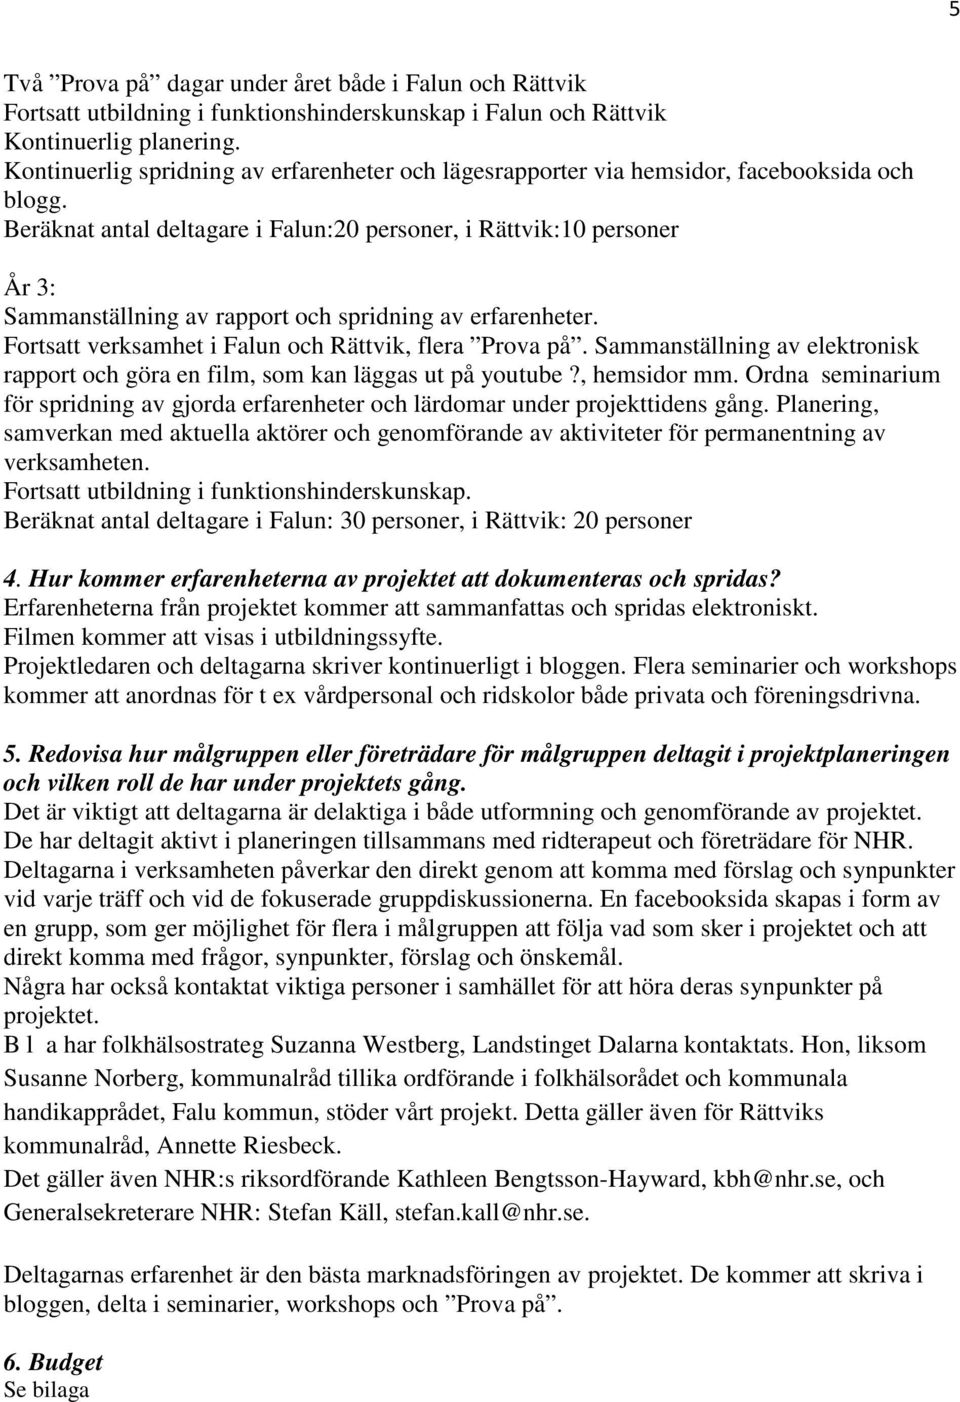 Beräknat antal deltagare i Falun:20 personer, i Rättvik:10 personer År 3: Sammanställning av rapport och spridning av erfarenheter. Fortsatt verksamhet i Falun och Rättvik, flera Prova på.